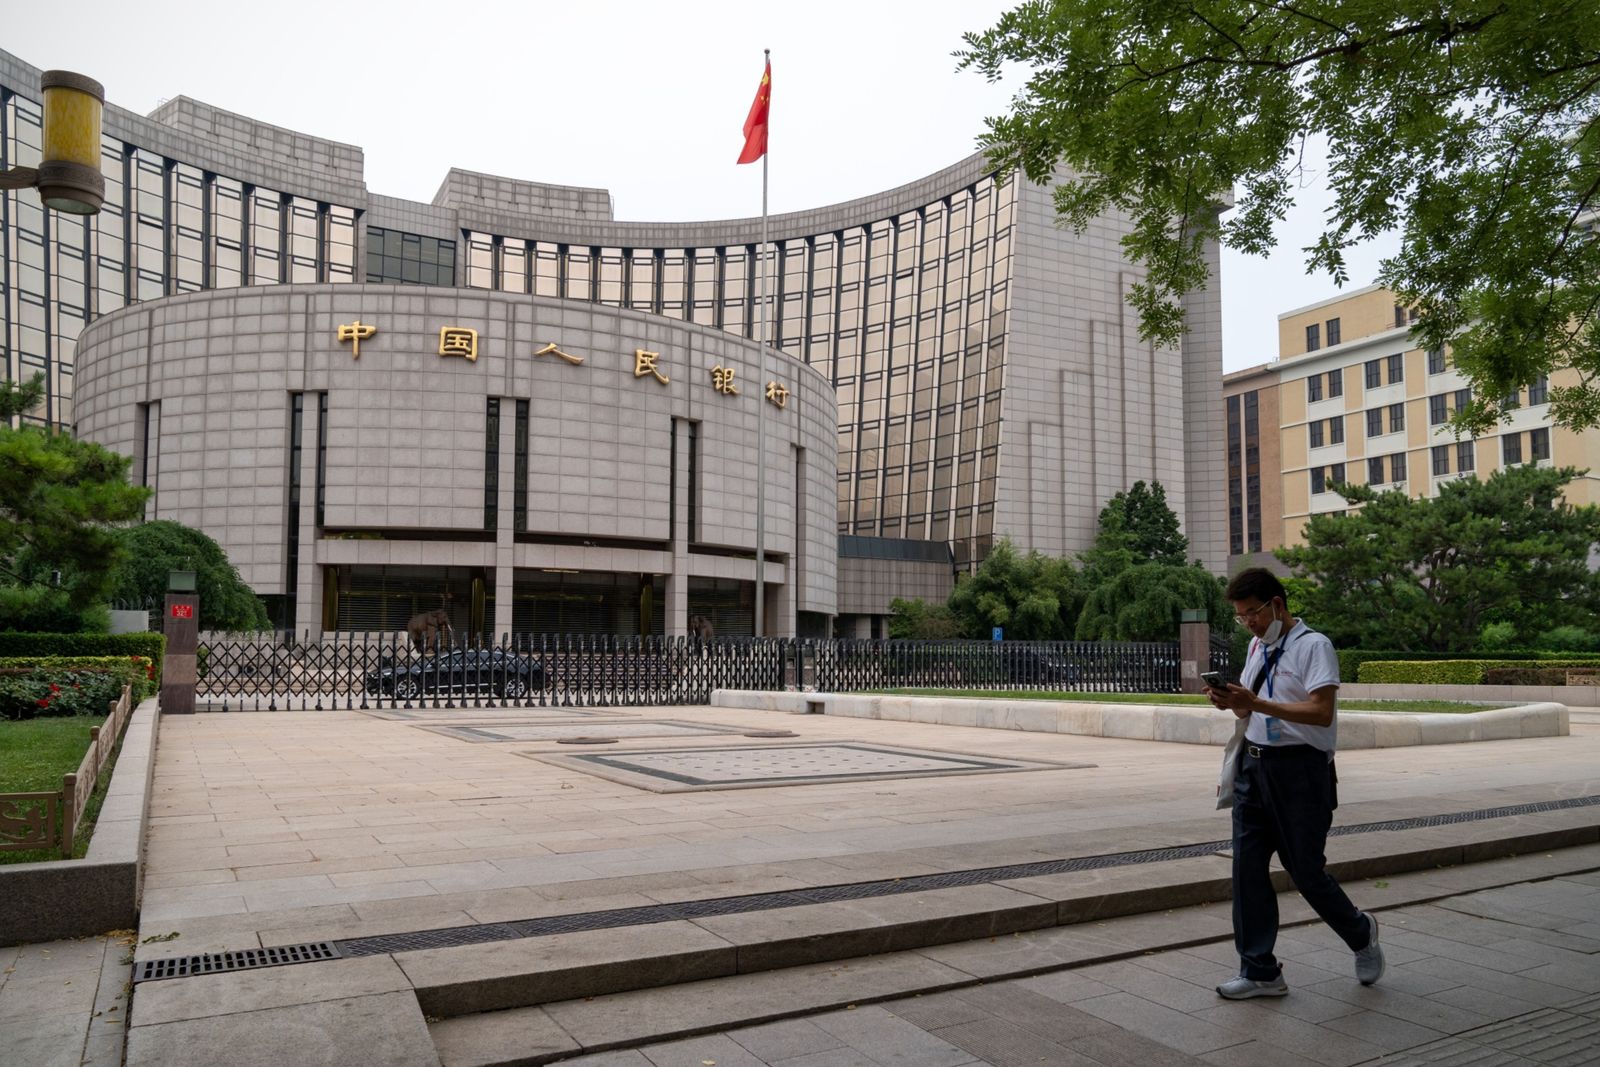  اليوان يتعافى بعد رسالة دعم قوية من المركزي الصيني